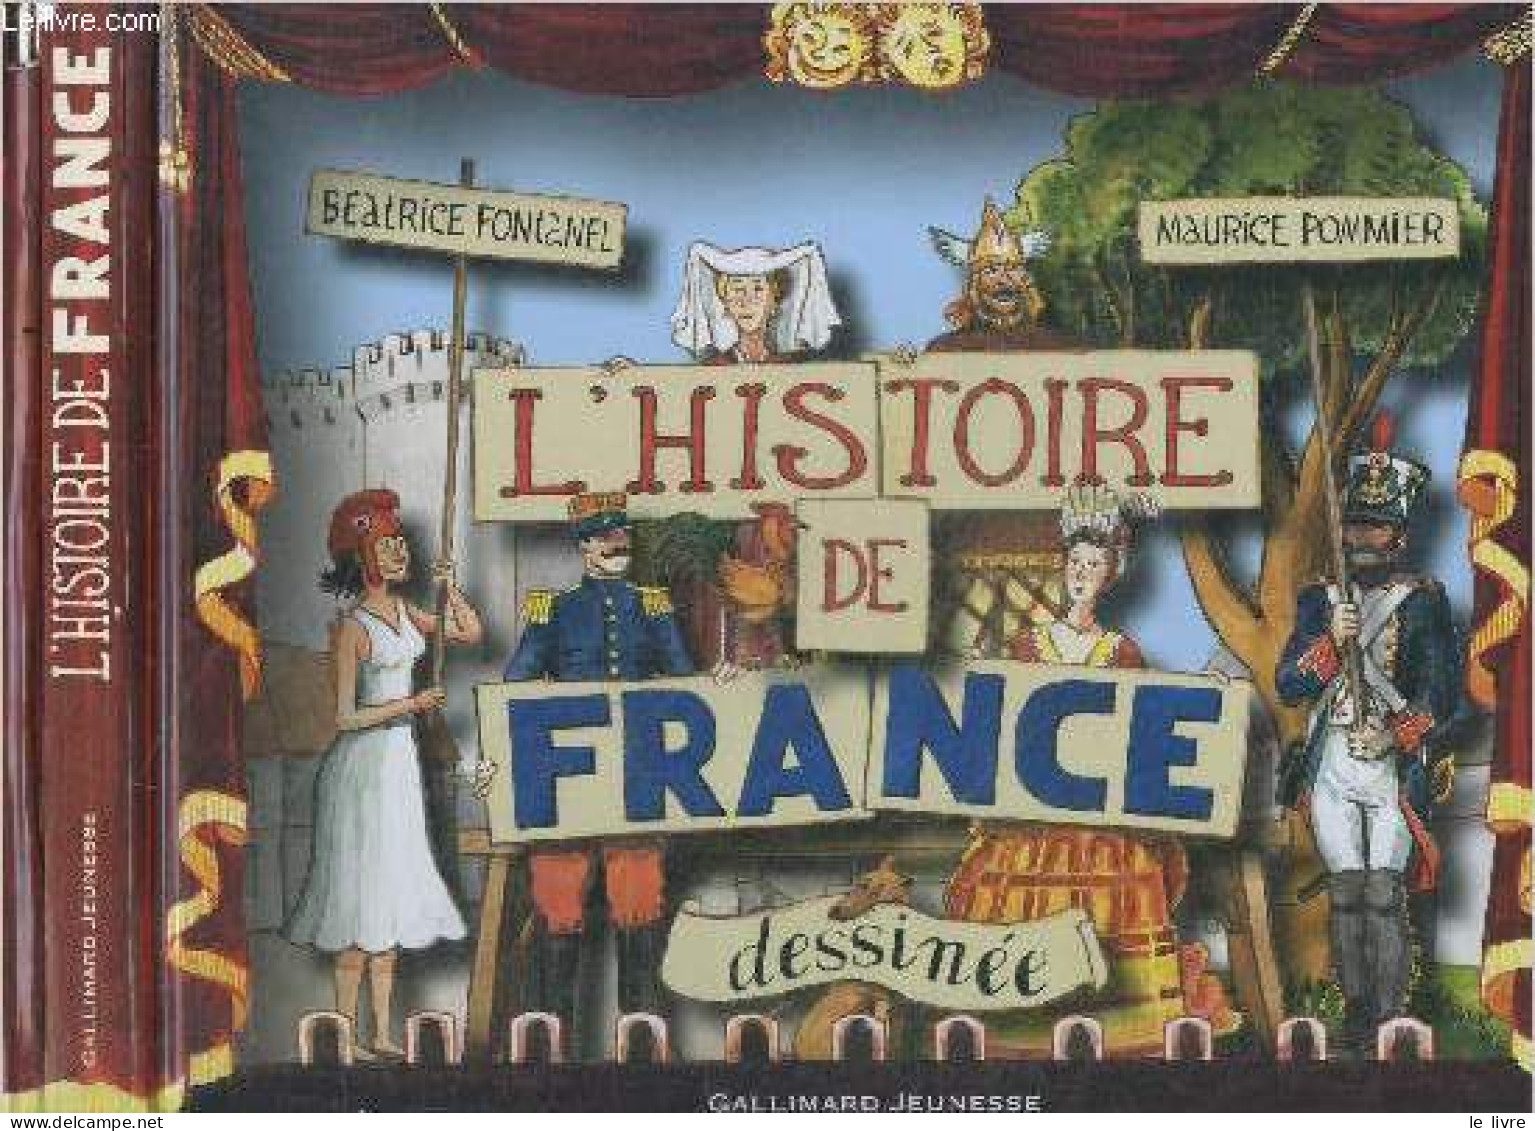 L'histoire De France Dessinée - Beatrice Fontanel, Maurice Pommier (Illustrations) - 0 - Storia